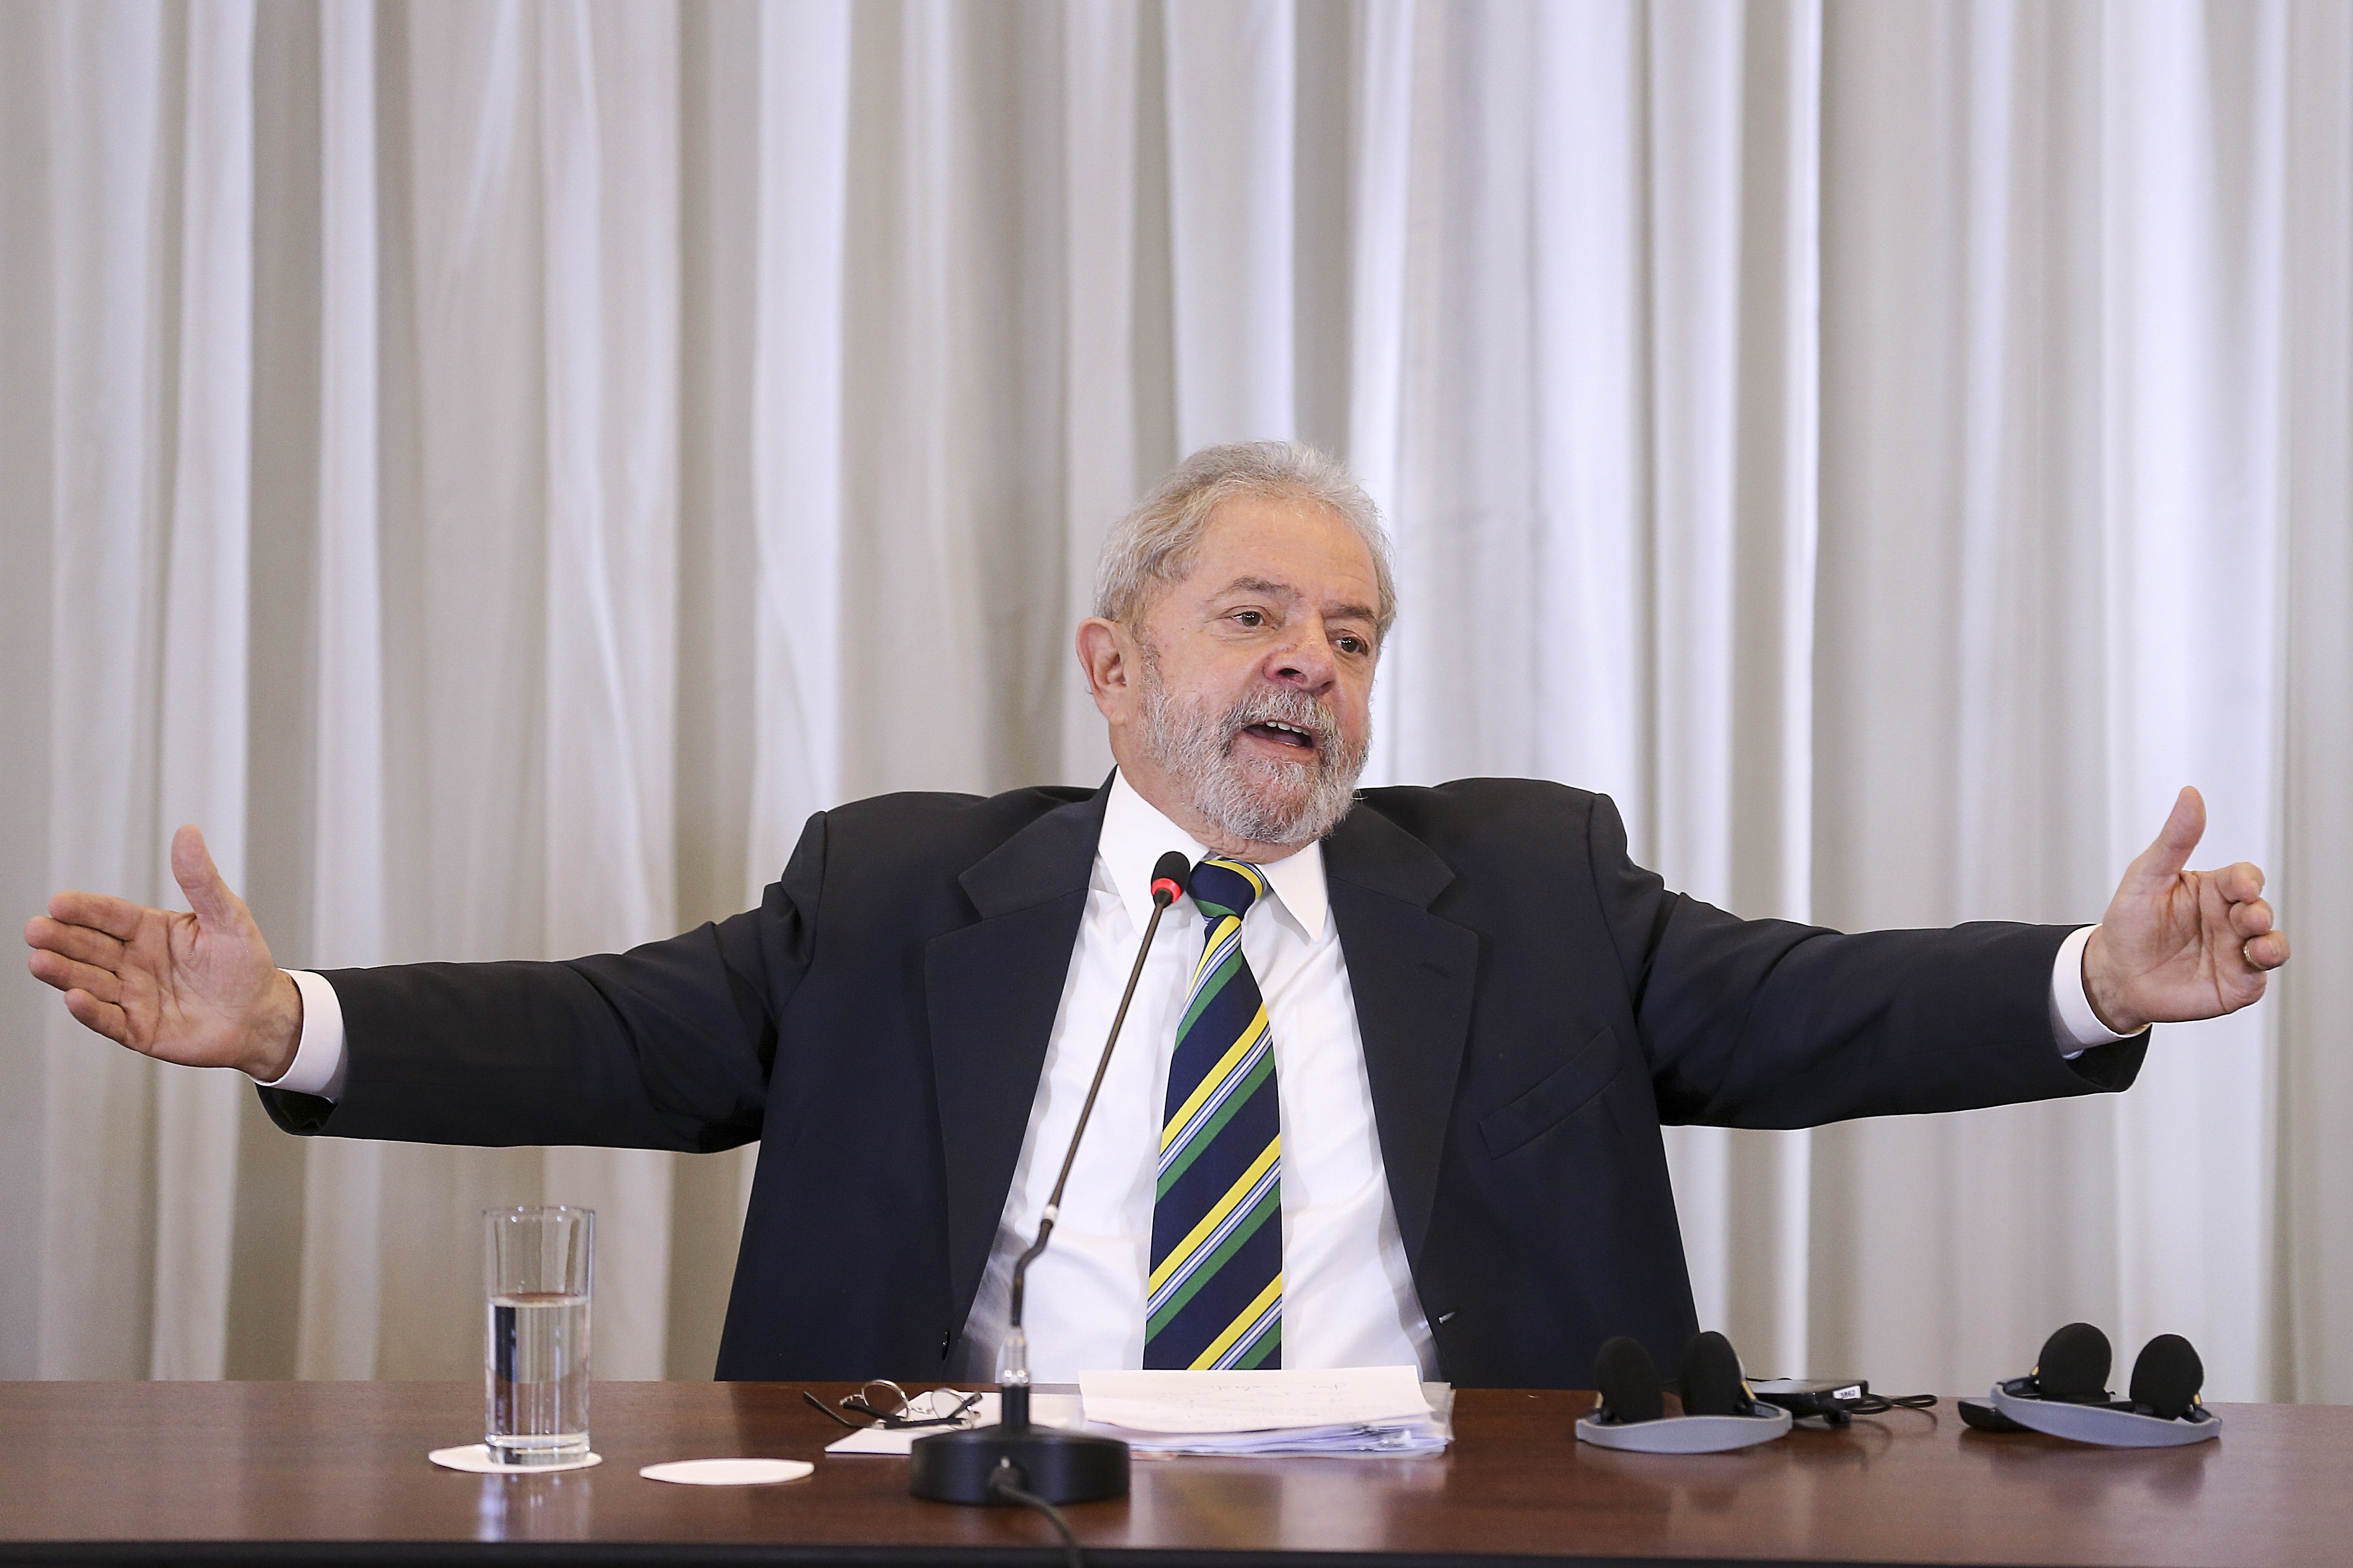 Ricardo Stuckert/Instituto Lula